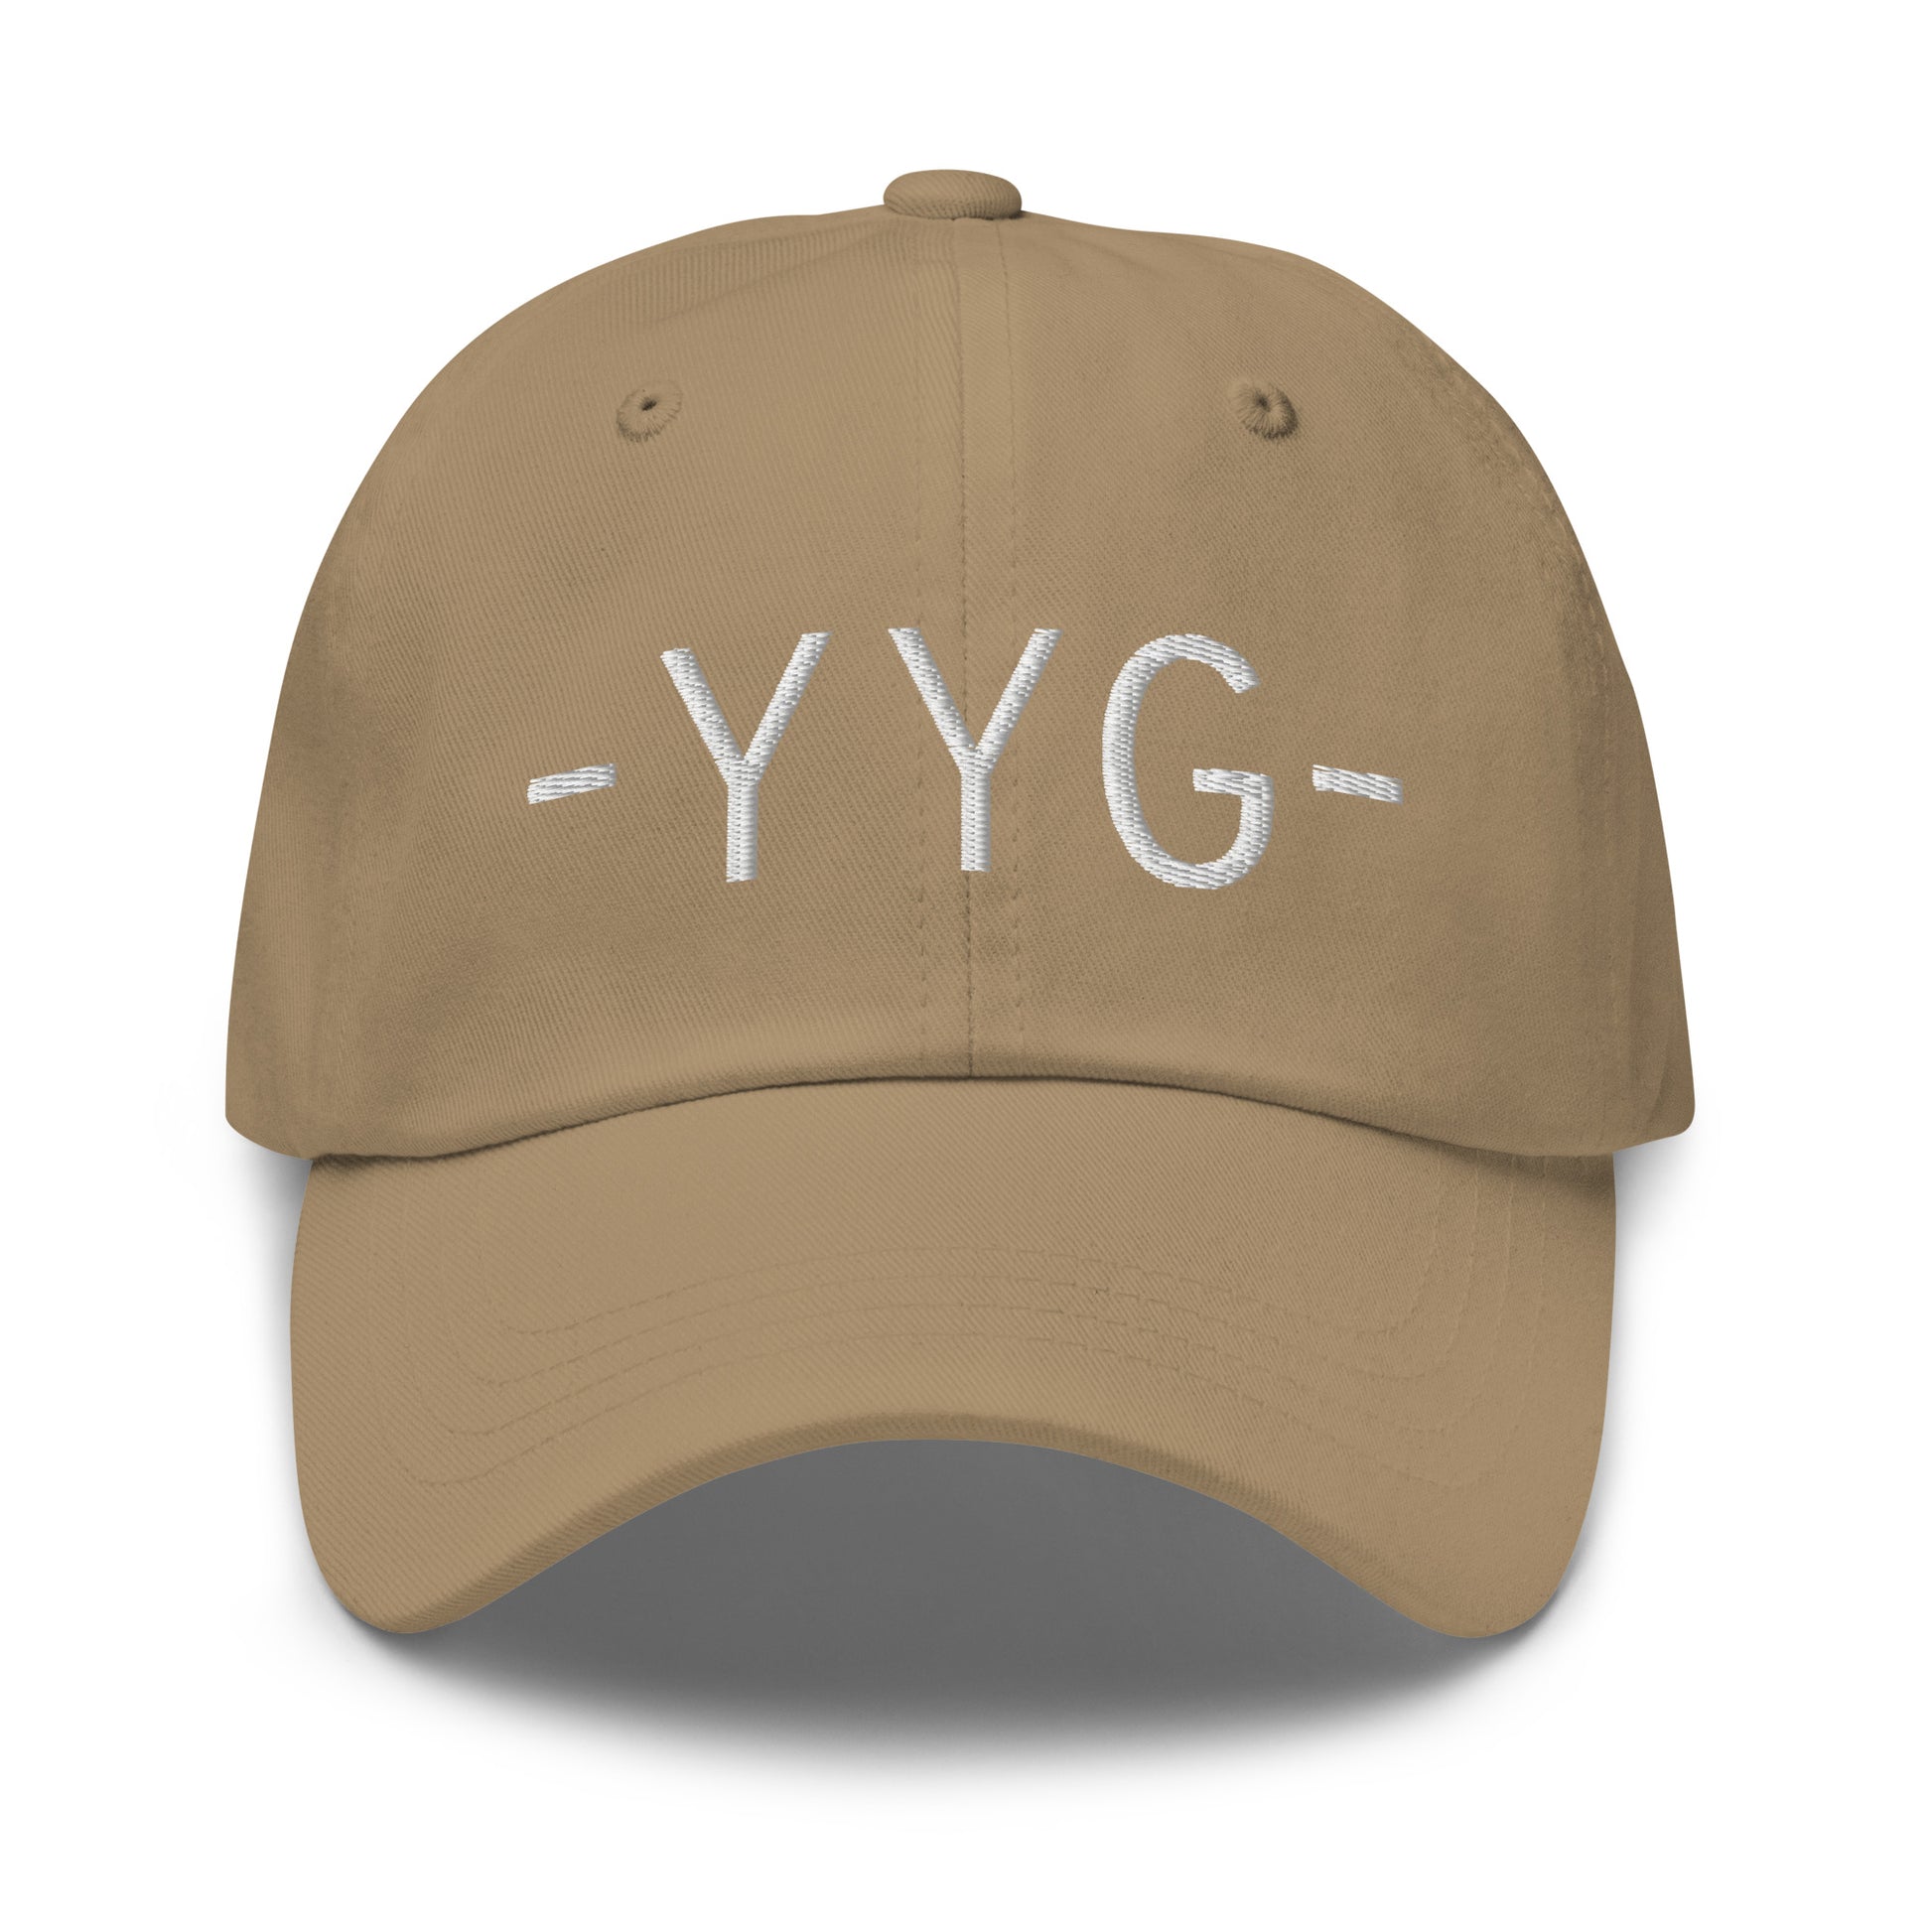 Souvenir Baseball Cap - White • YYG Charlottetown • YHM Designs - Image 21